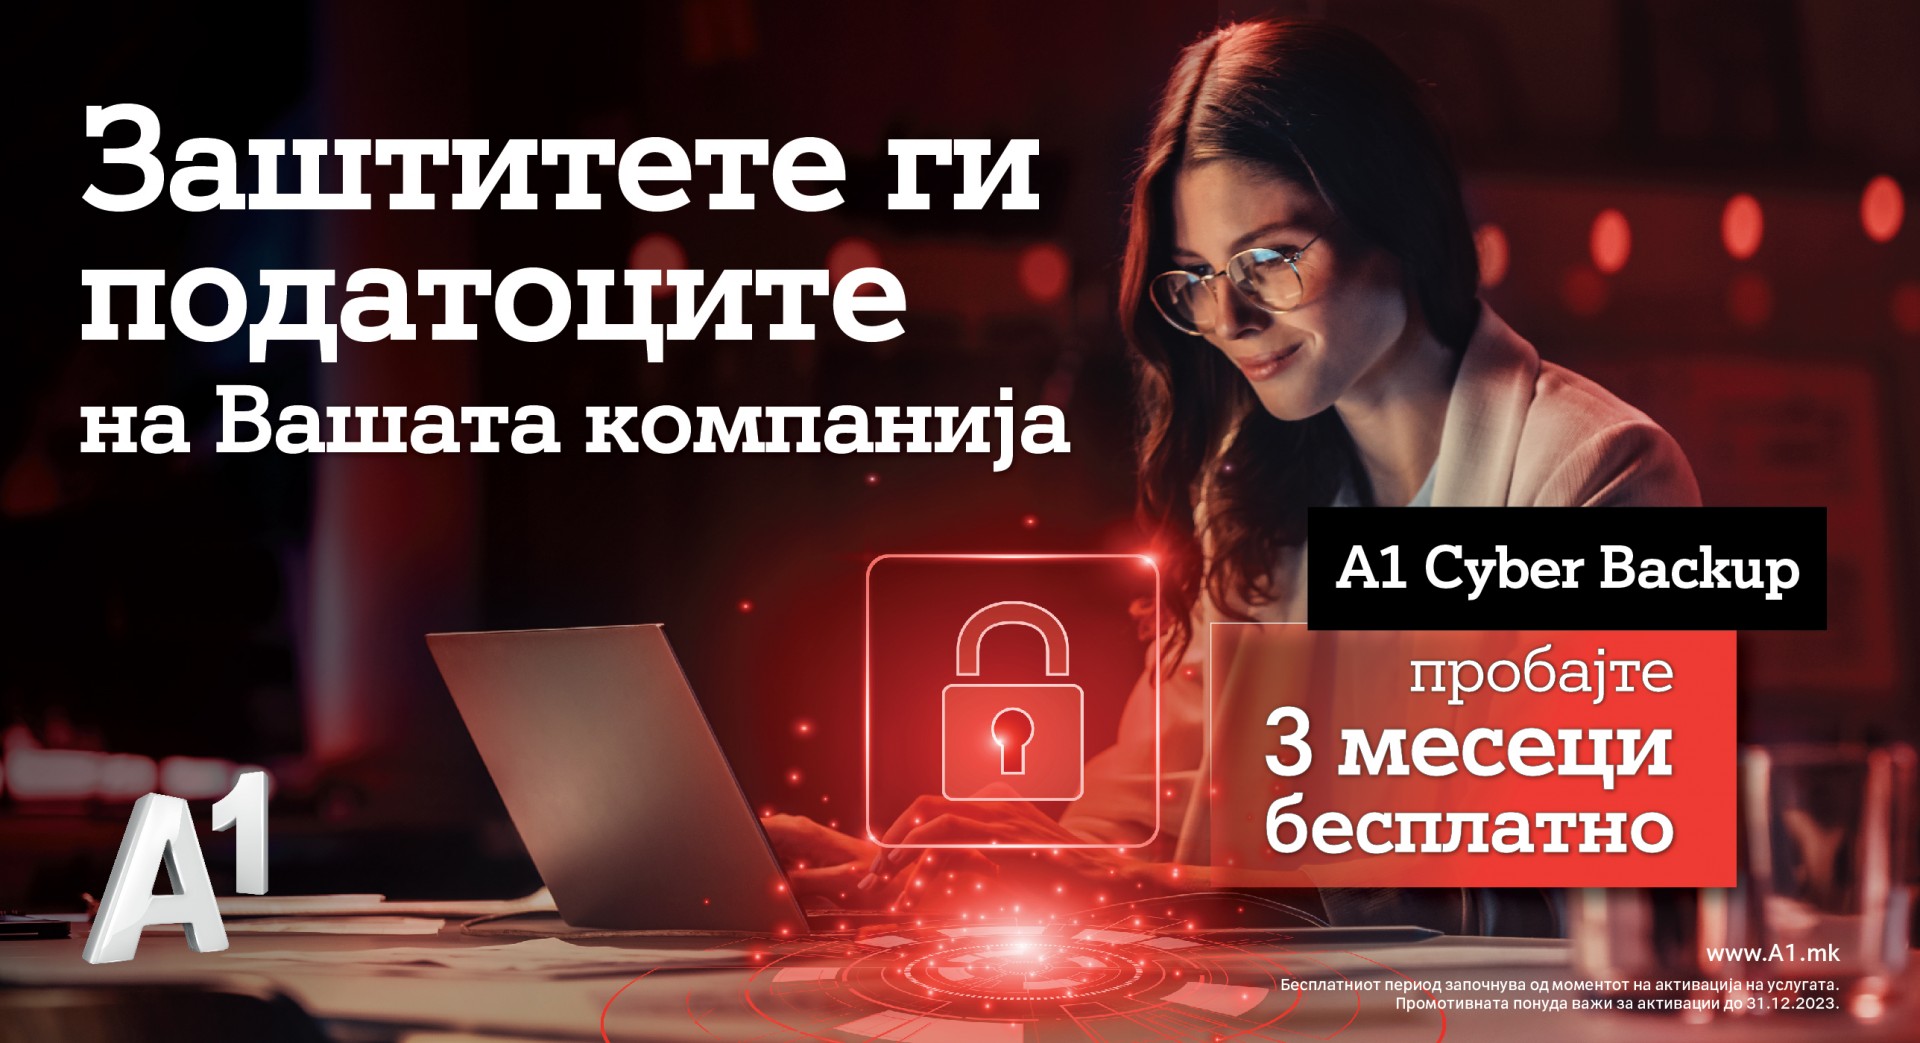 Безбедни онлајн со A1 Cyber Backup